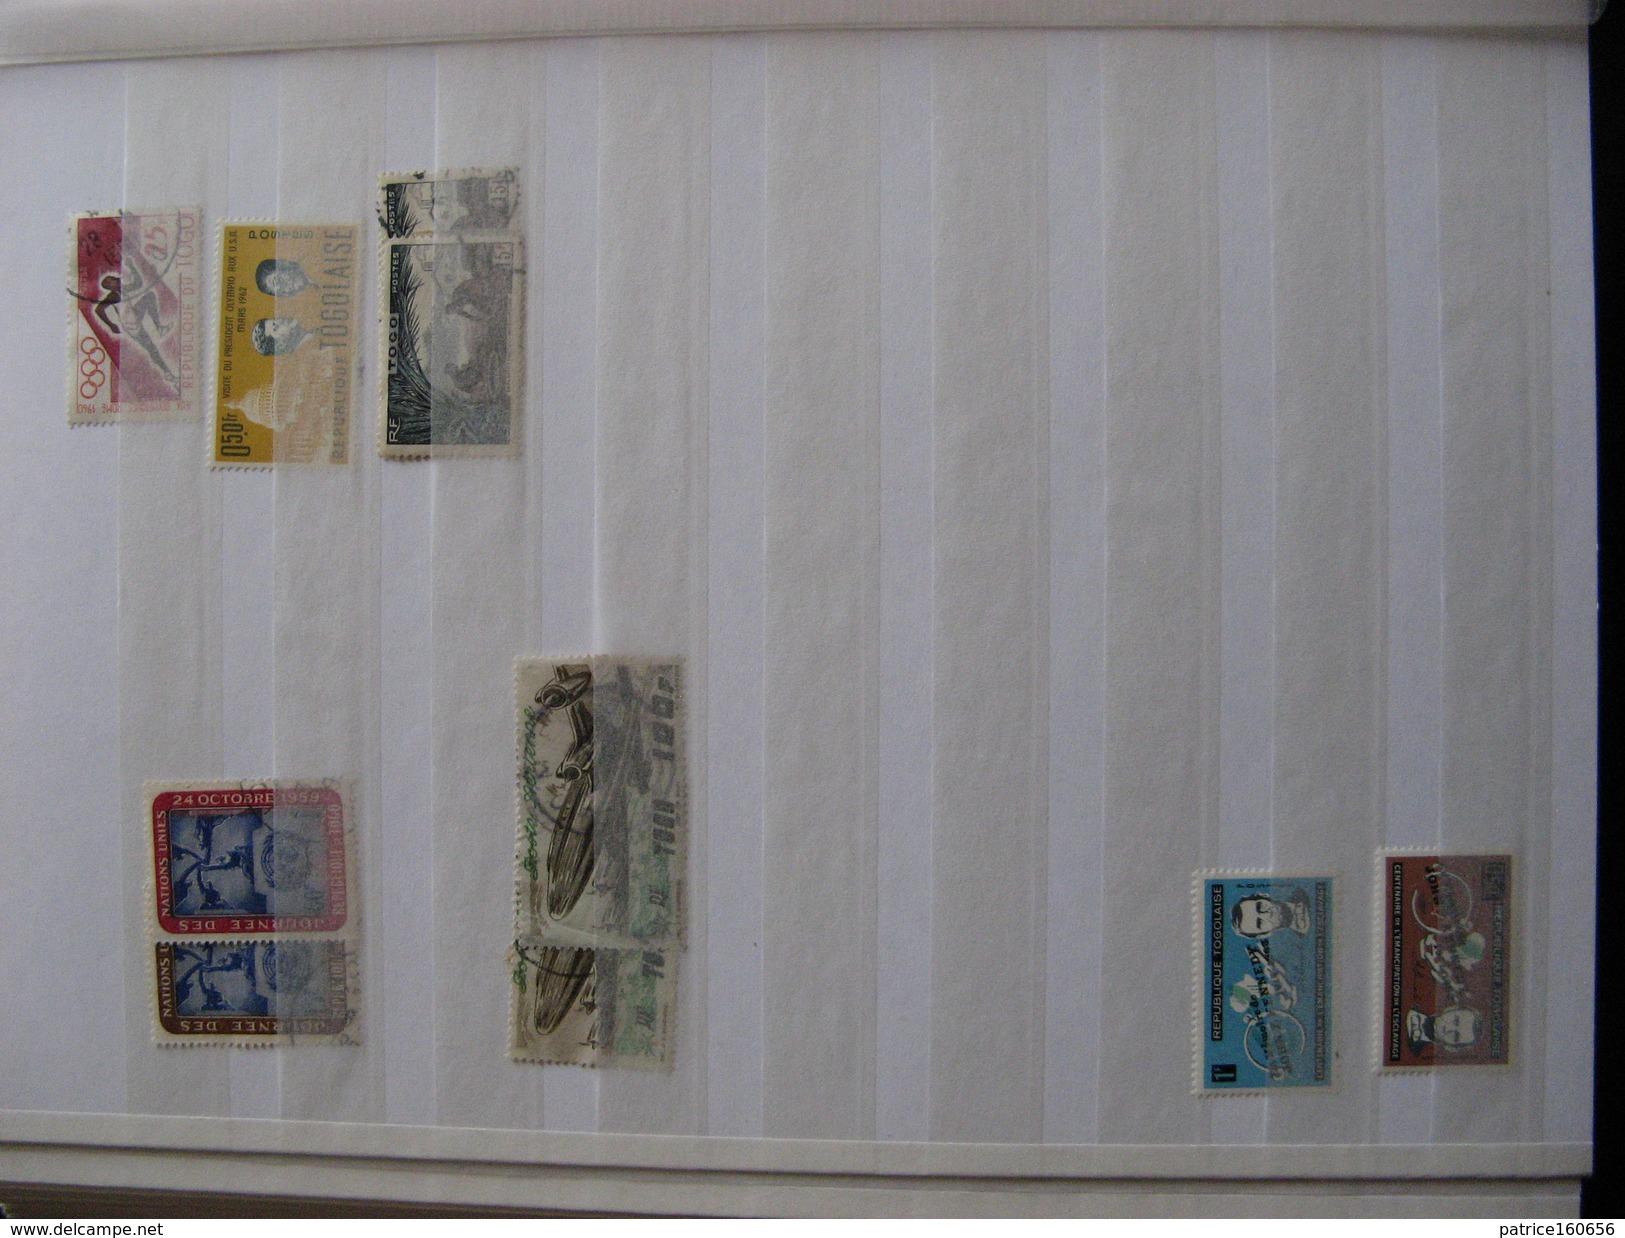 TB lot de timbres du TOGO dans un classeur . Neufs et oblitérés.